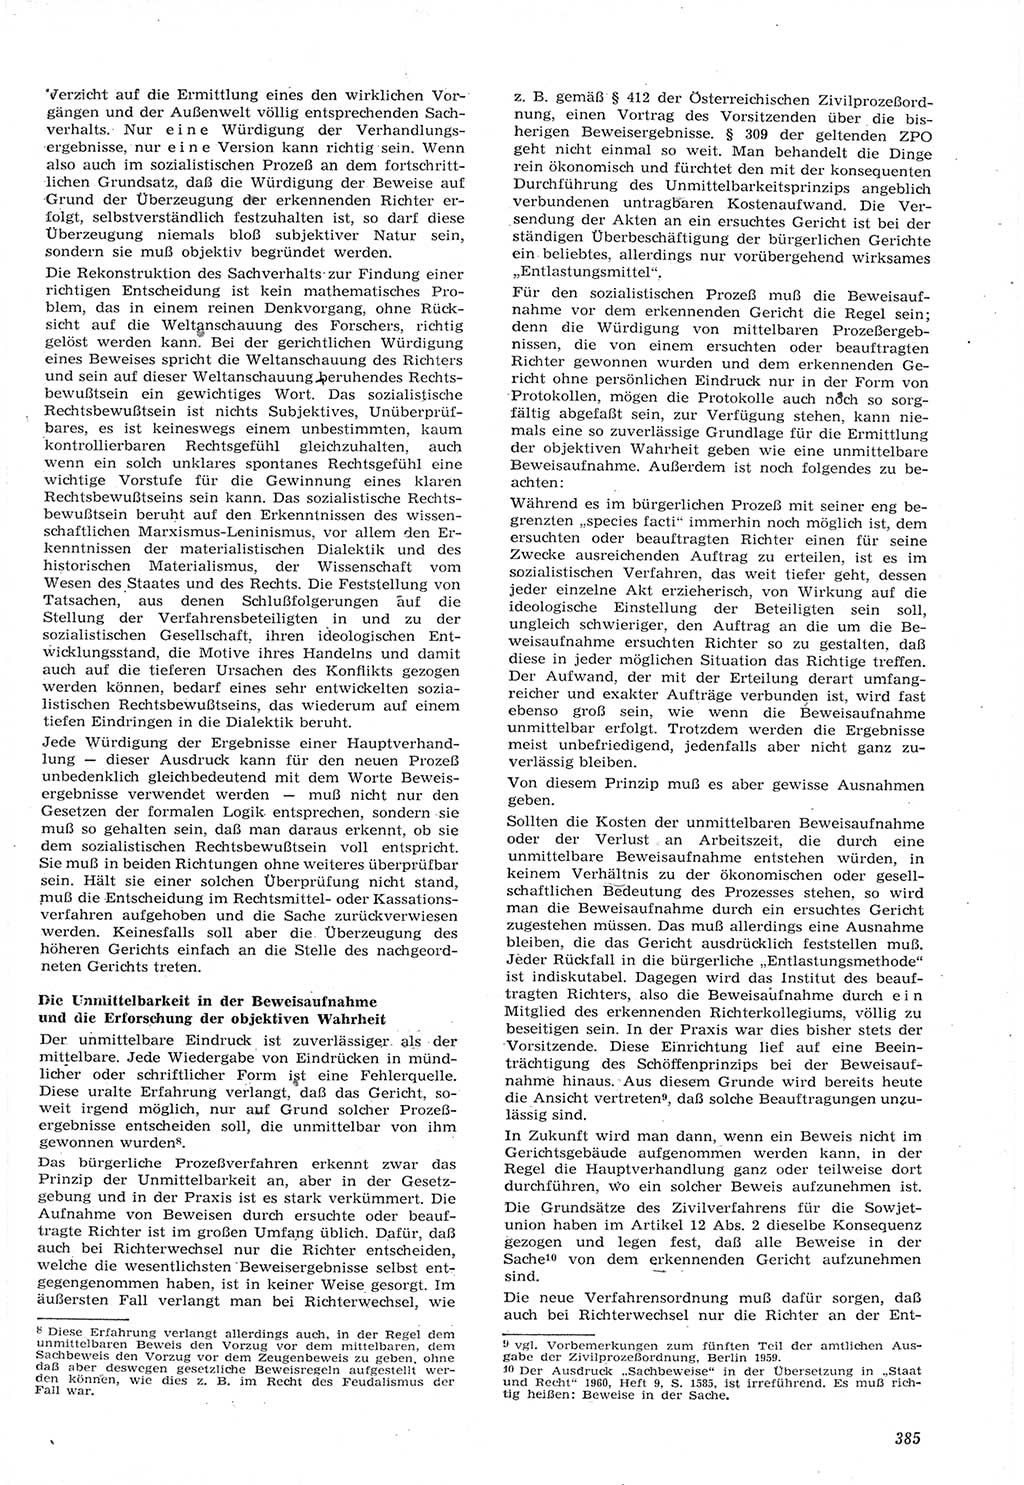 Neue Justiz (NJ), Zeitschrift für Recht und Rechtswissenschaft [Deutsche Demokratische Republik (DDR)], 15. Jahrgang 1961, Seite 385 (NJ DDR 1961, S. 385)